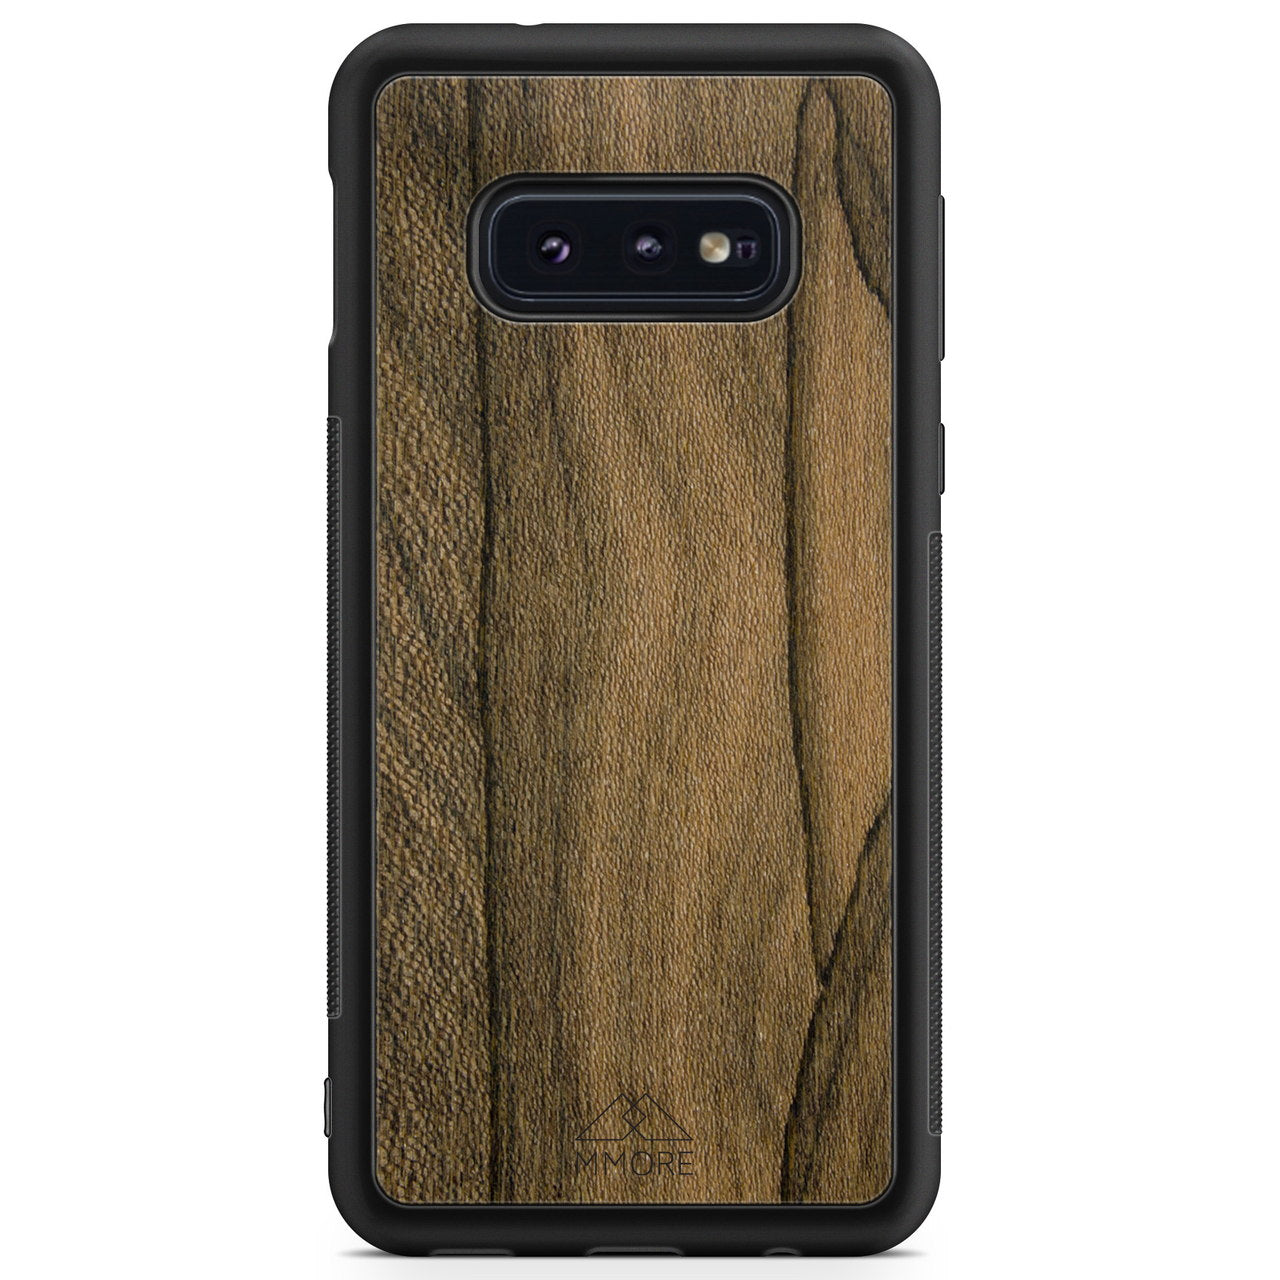 Funda para teléfono Samsung S10 Edge de madera de ziricote